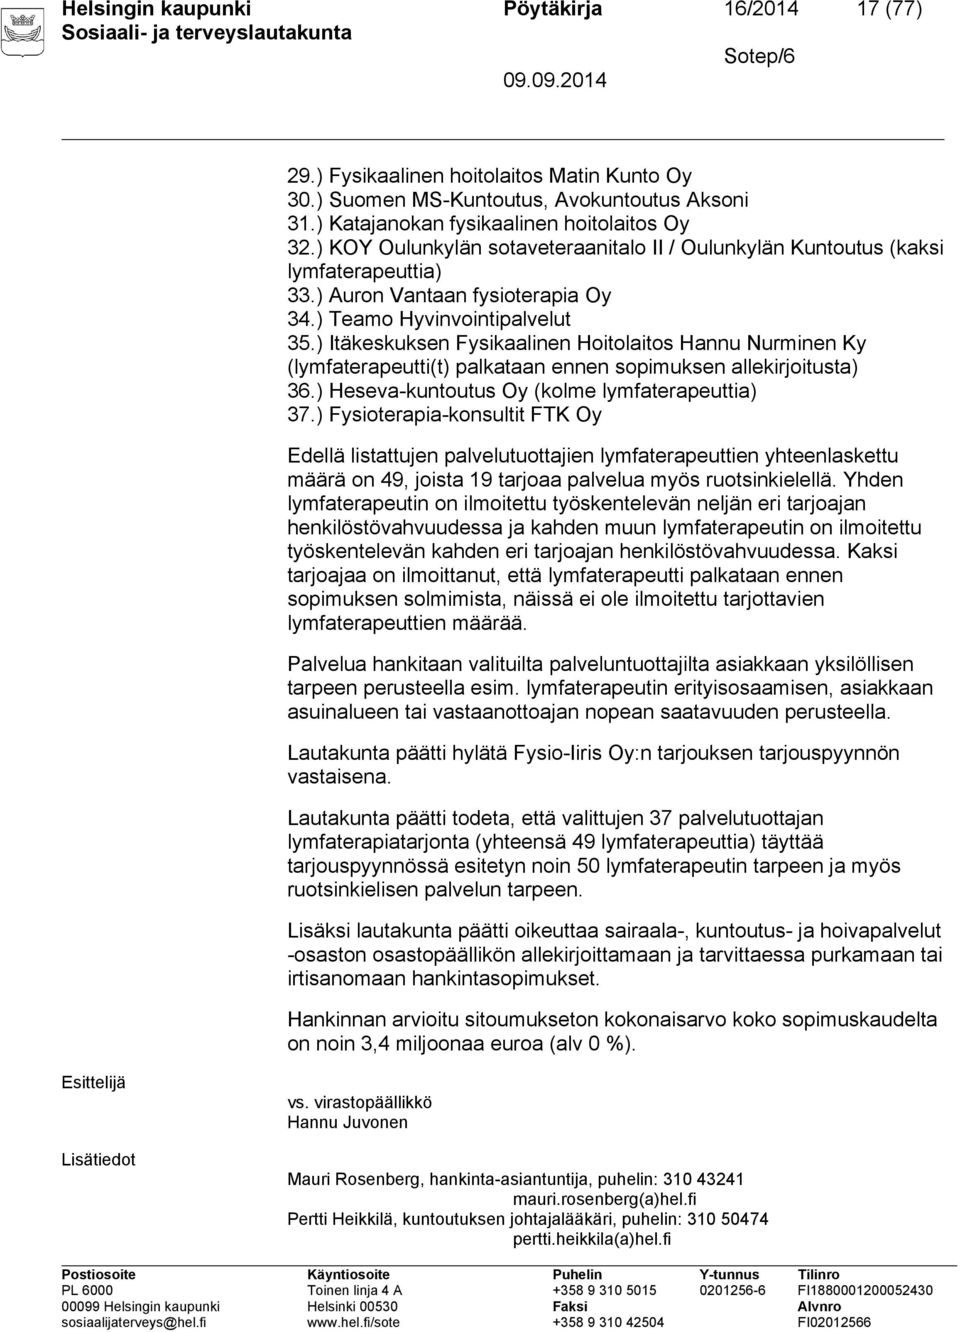 ) Itäkeskuksen Fysikaalinen Hoitolaitos Hannu Nurminen Ky (lymfaterapeutti(t) palkataan ennen sopimuksen allekirjoitusta) 36.) Heseva-kuntoutus Oy (kolme lymfaterapeuttia) 37.